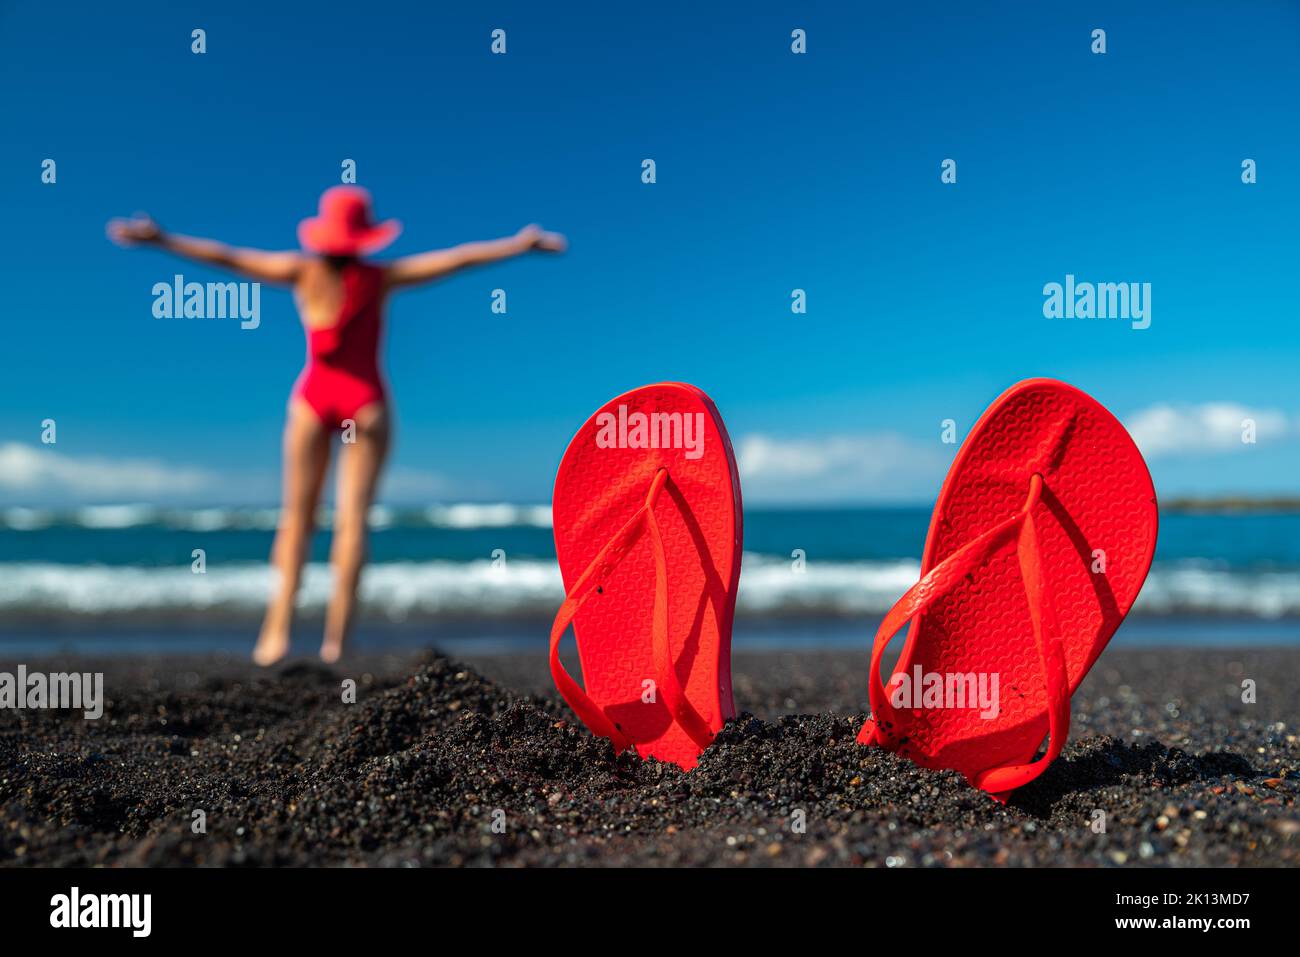 Infradito rosso nella sabbia nera e silhouette di donna in costume da bagno rosso in piedi sulla spiaggia dell'oceano. Concetto estivo. Foto Stock